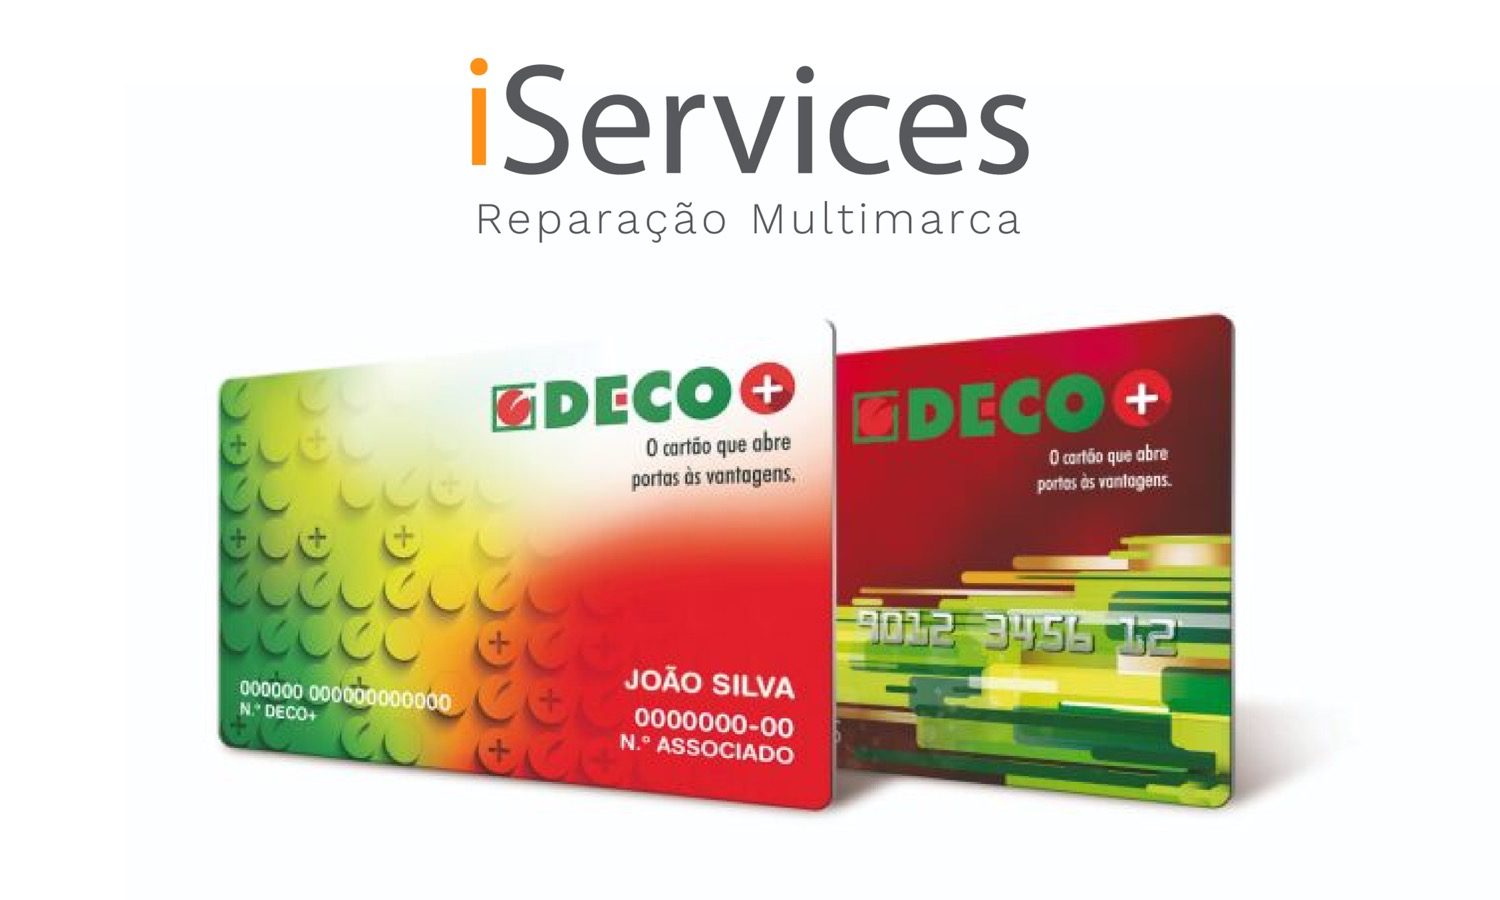 iServices est partenaire DECO+  blog post